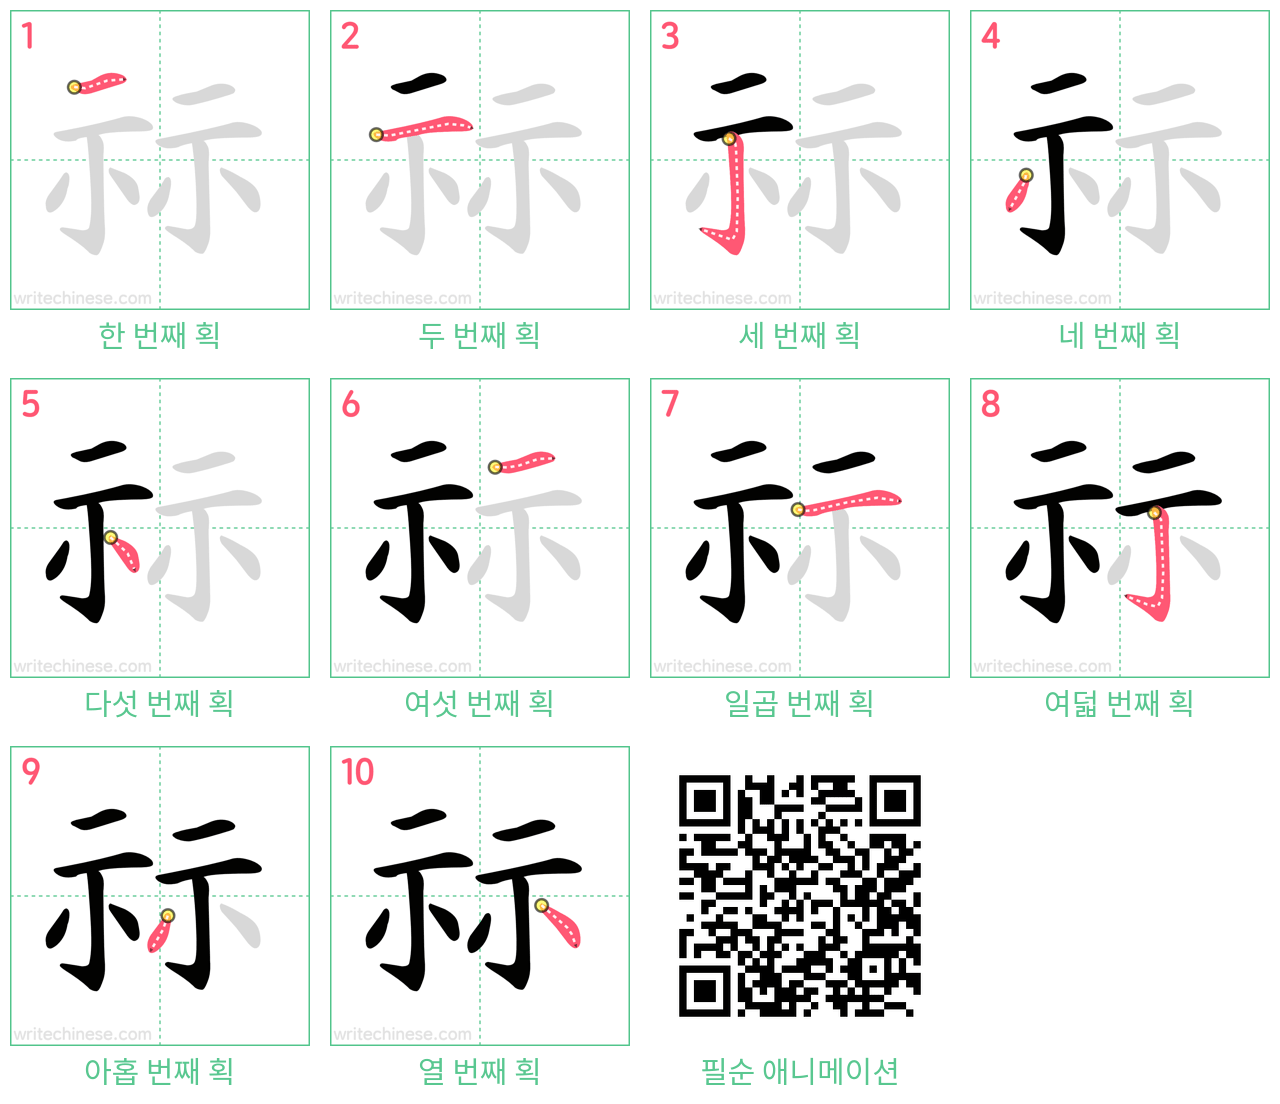 祘 step-by-step stroke order diagrams